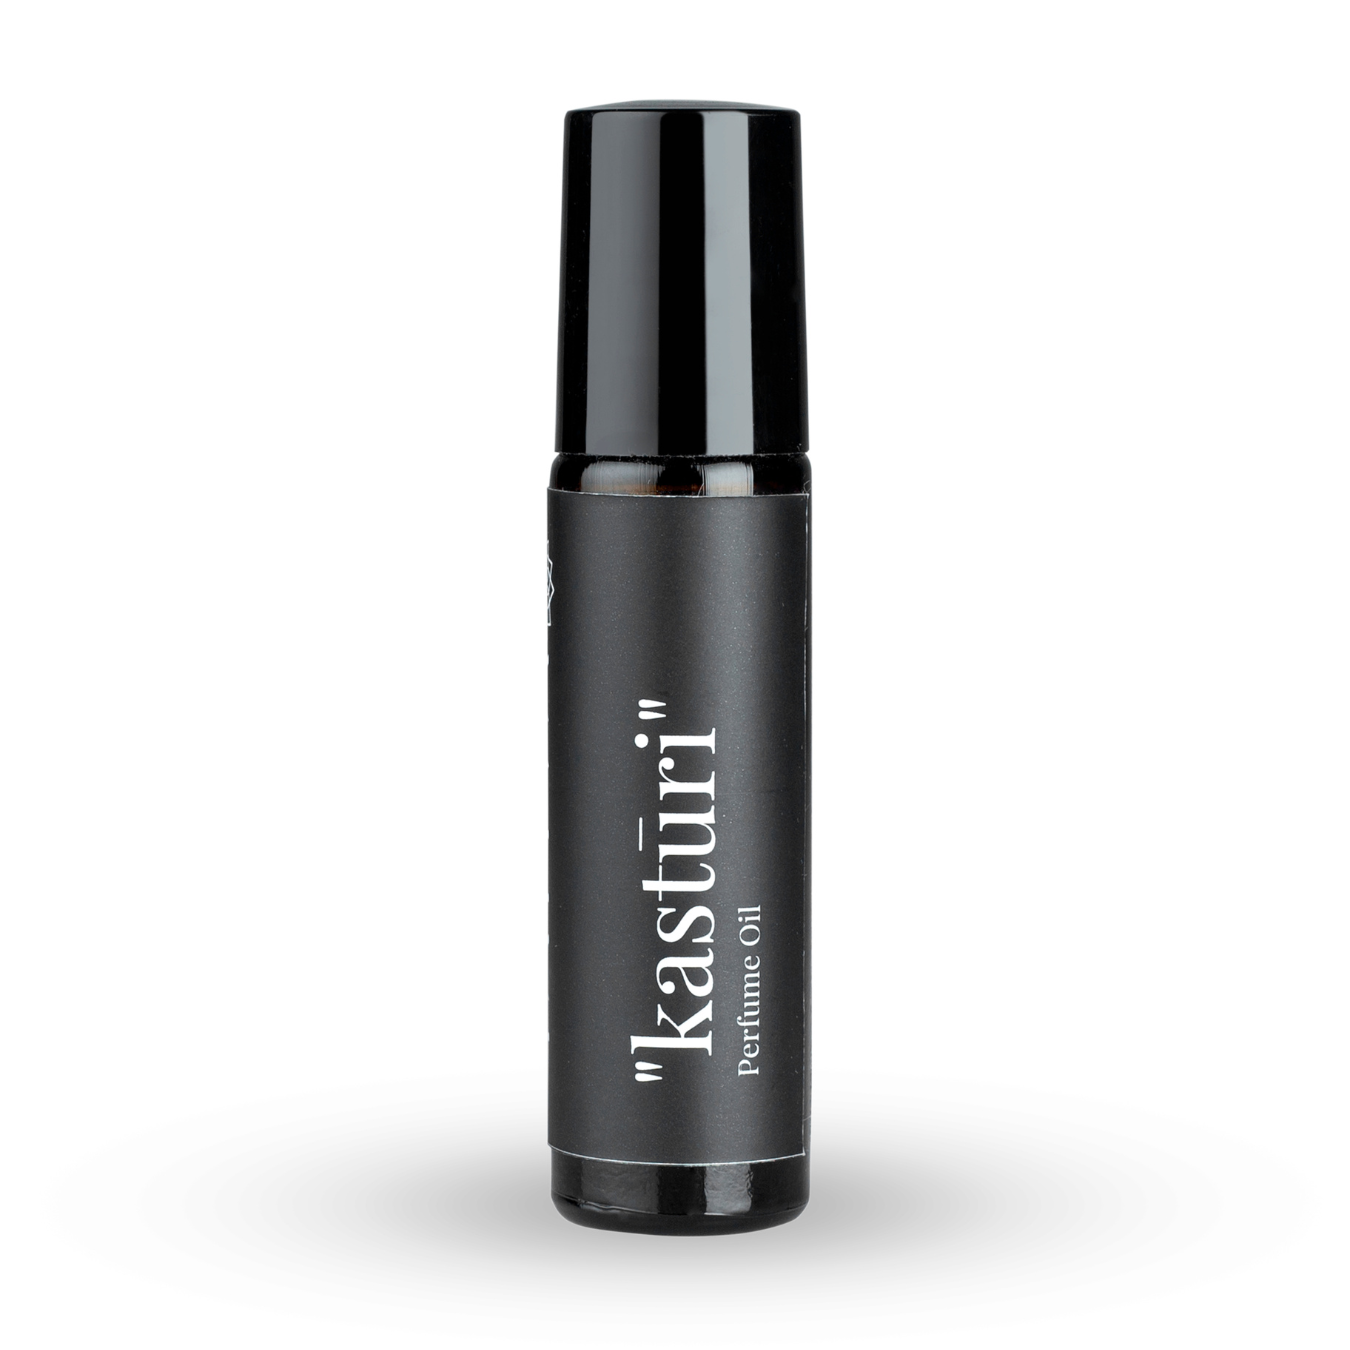 Tattva "Kasturi" - Musk Roll-On Perfume Oil